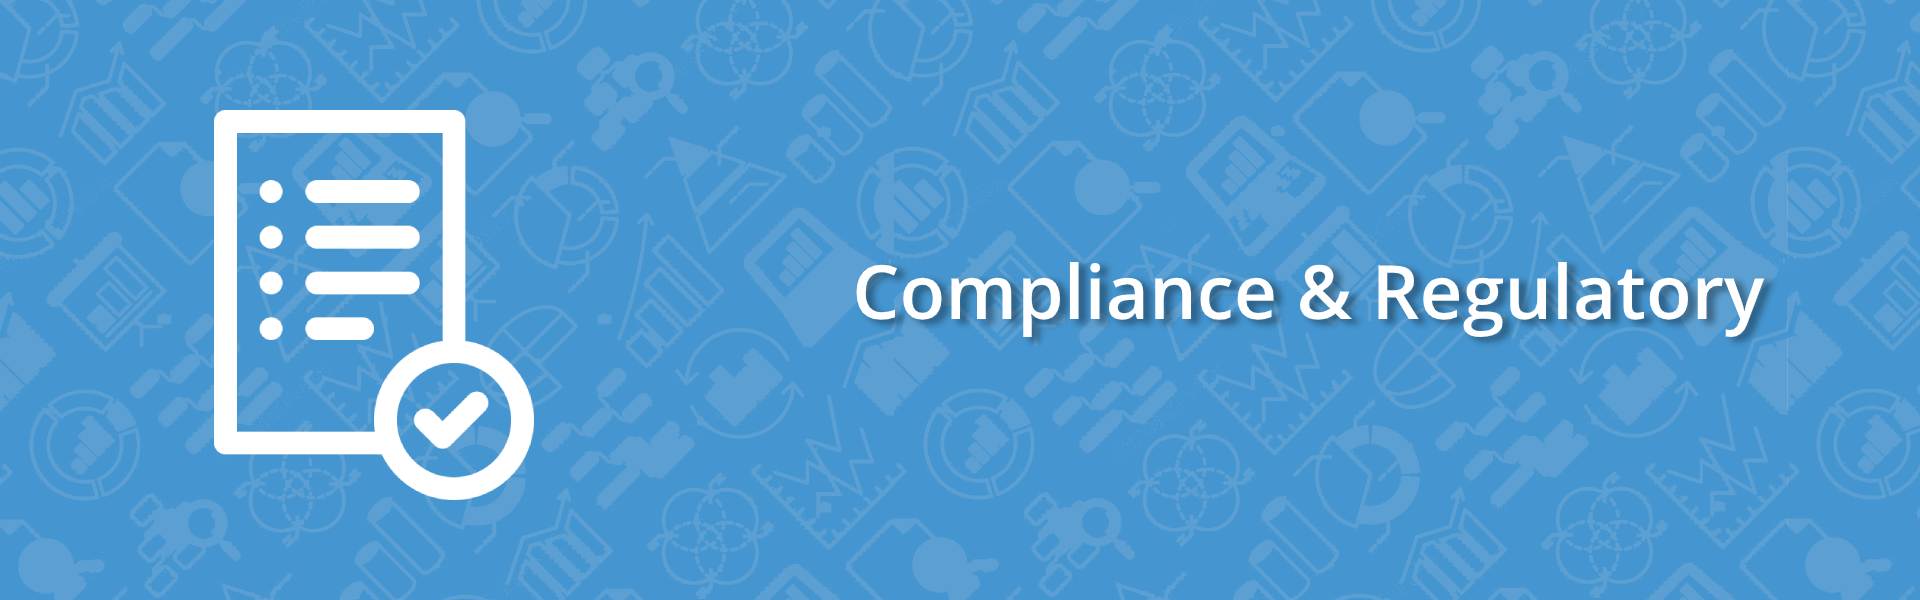 Compliance & Regulatory